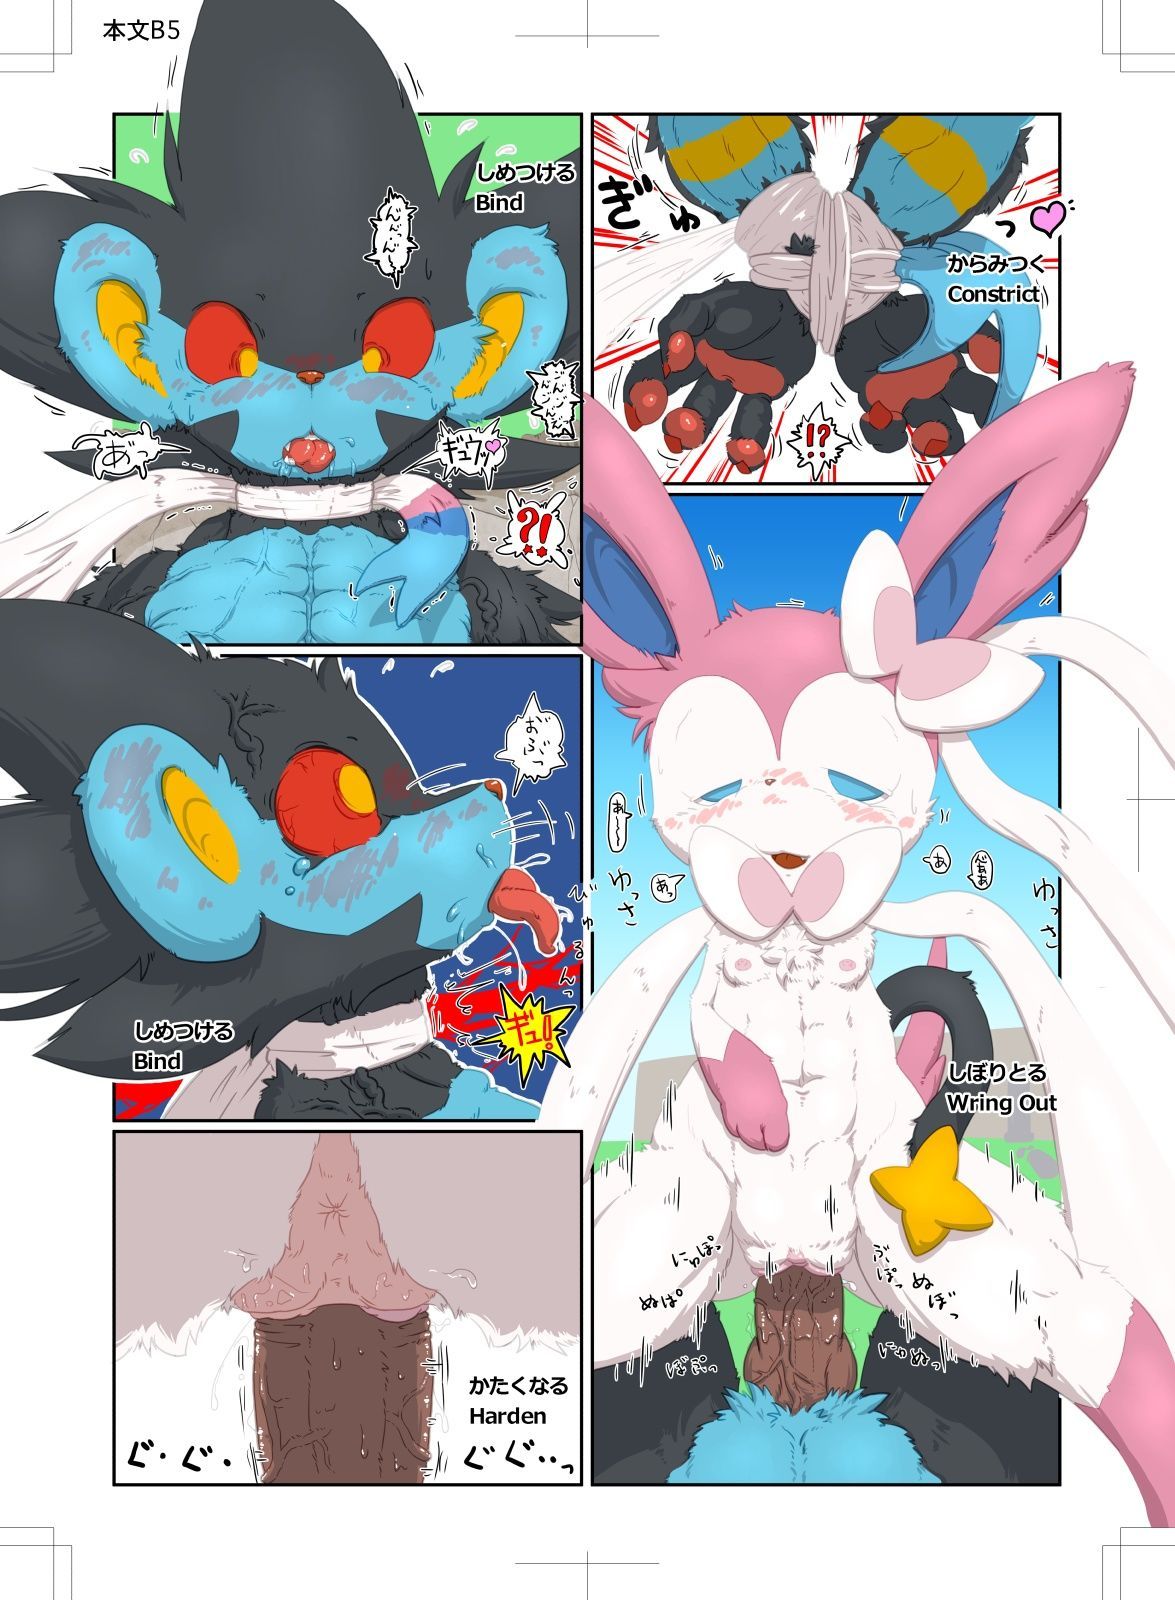 đồng tính nữ thiếu niên sumeragi sylveon đấu với luxray (pokemon)